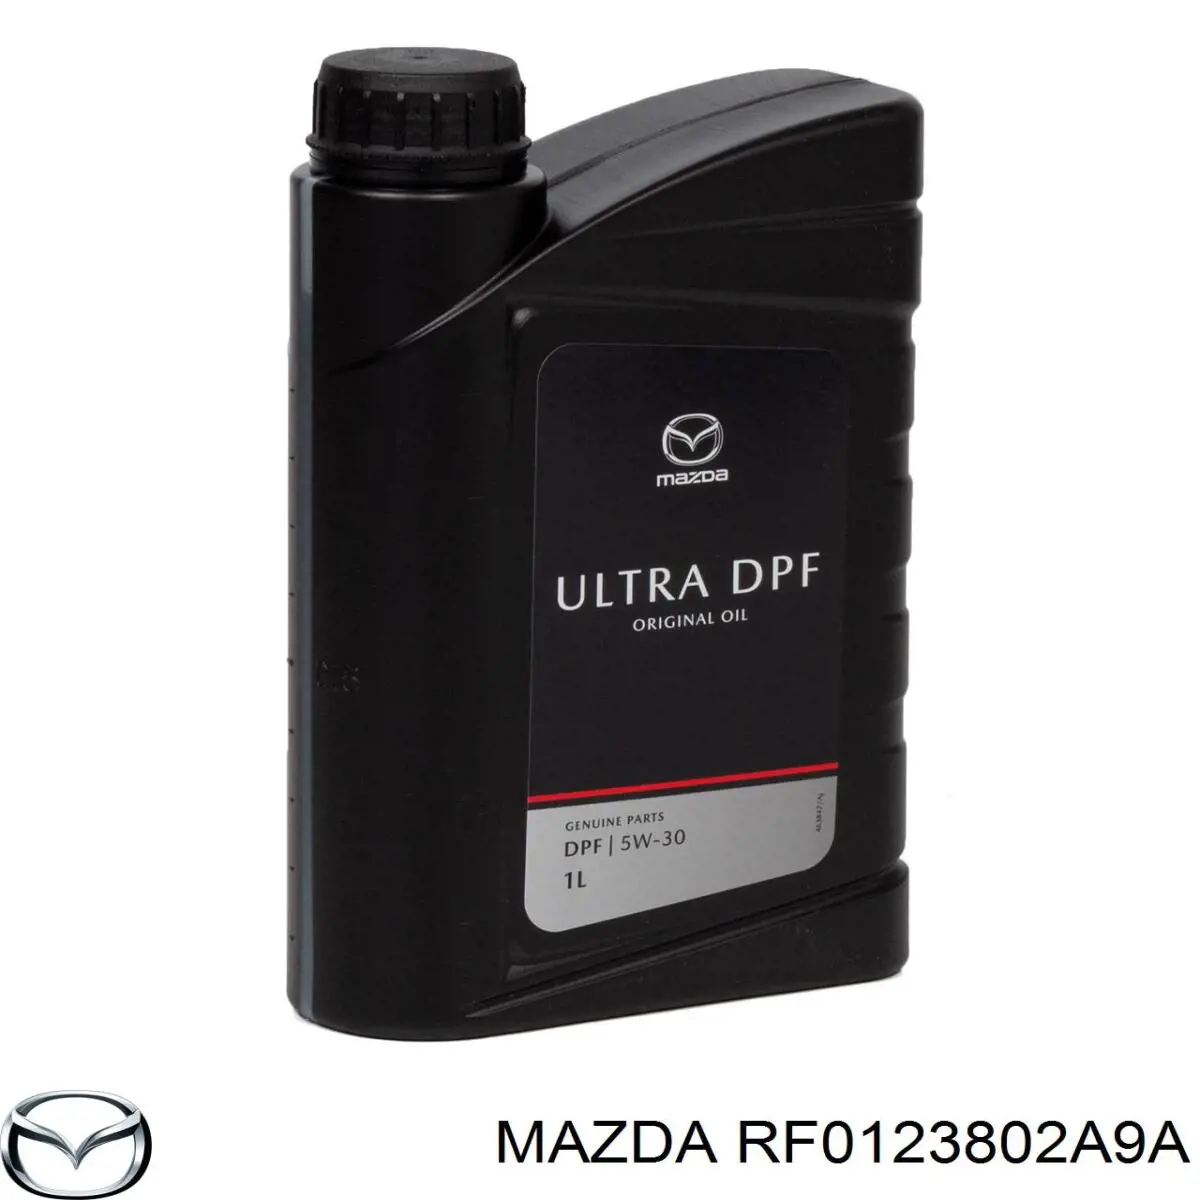 RF0123802A9A Mazda filtro de aceite